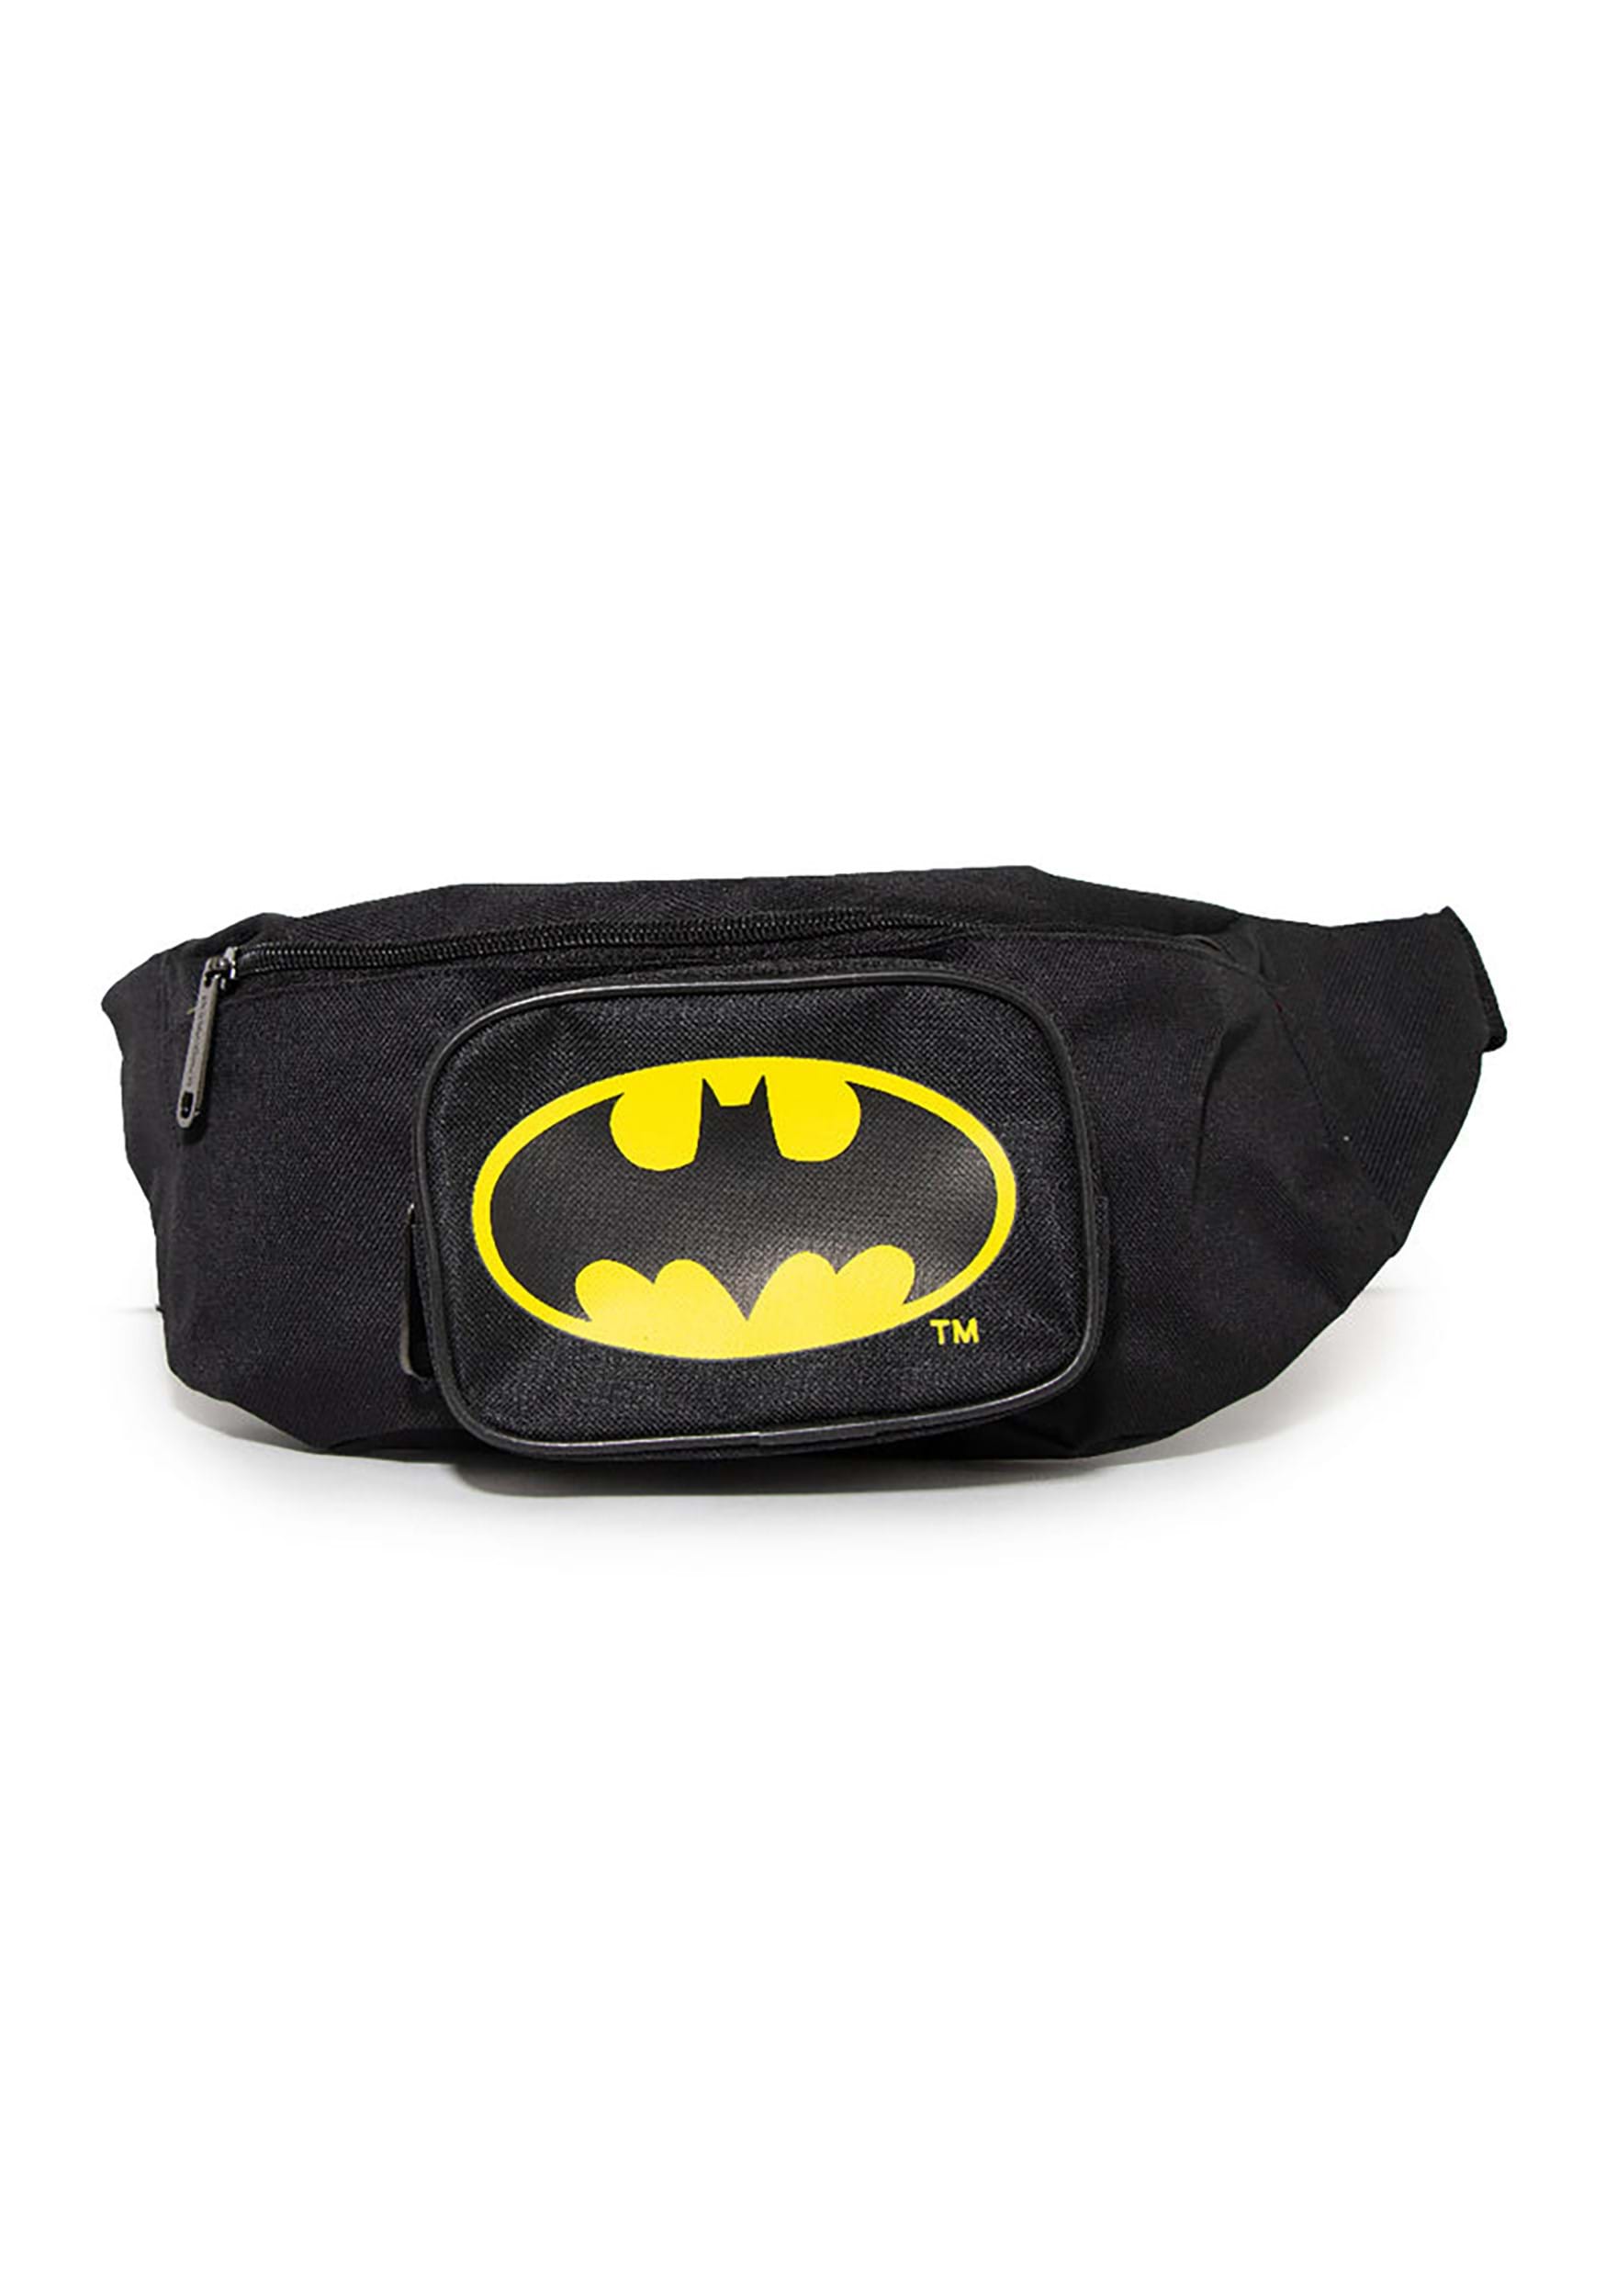 Batman Bat Signal Double Zipper Fanny Pack Bag